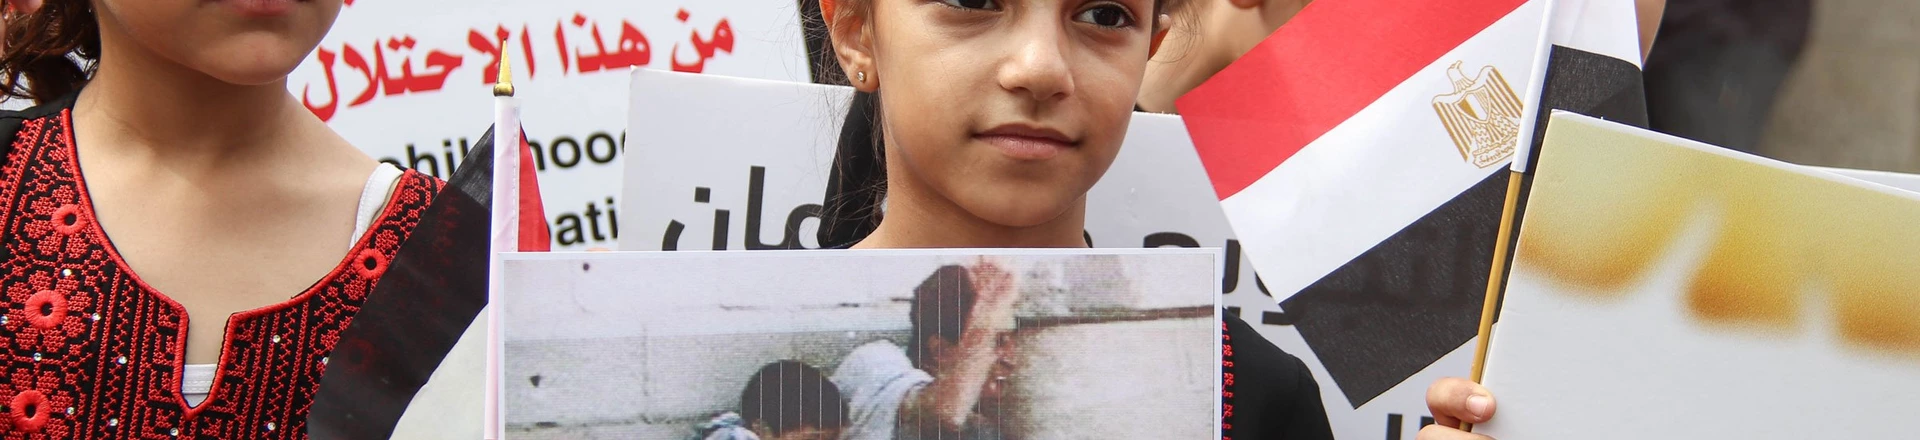 Crianças palestinas participam de protesto contra o cerco israelita à Faixa de Gaza, no Dia da Criança Árabe, em frente à sede do Programa das Nações Unidas para o Desenvolvimento (PNUD).